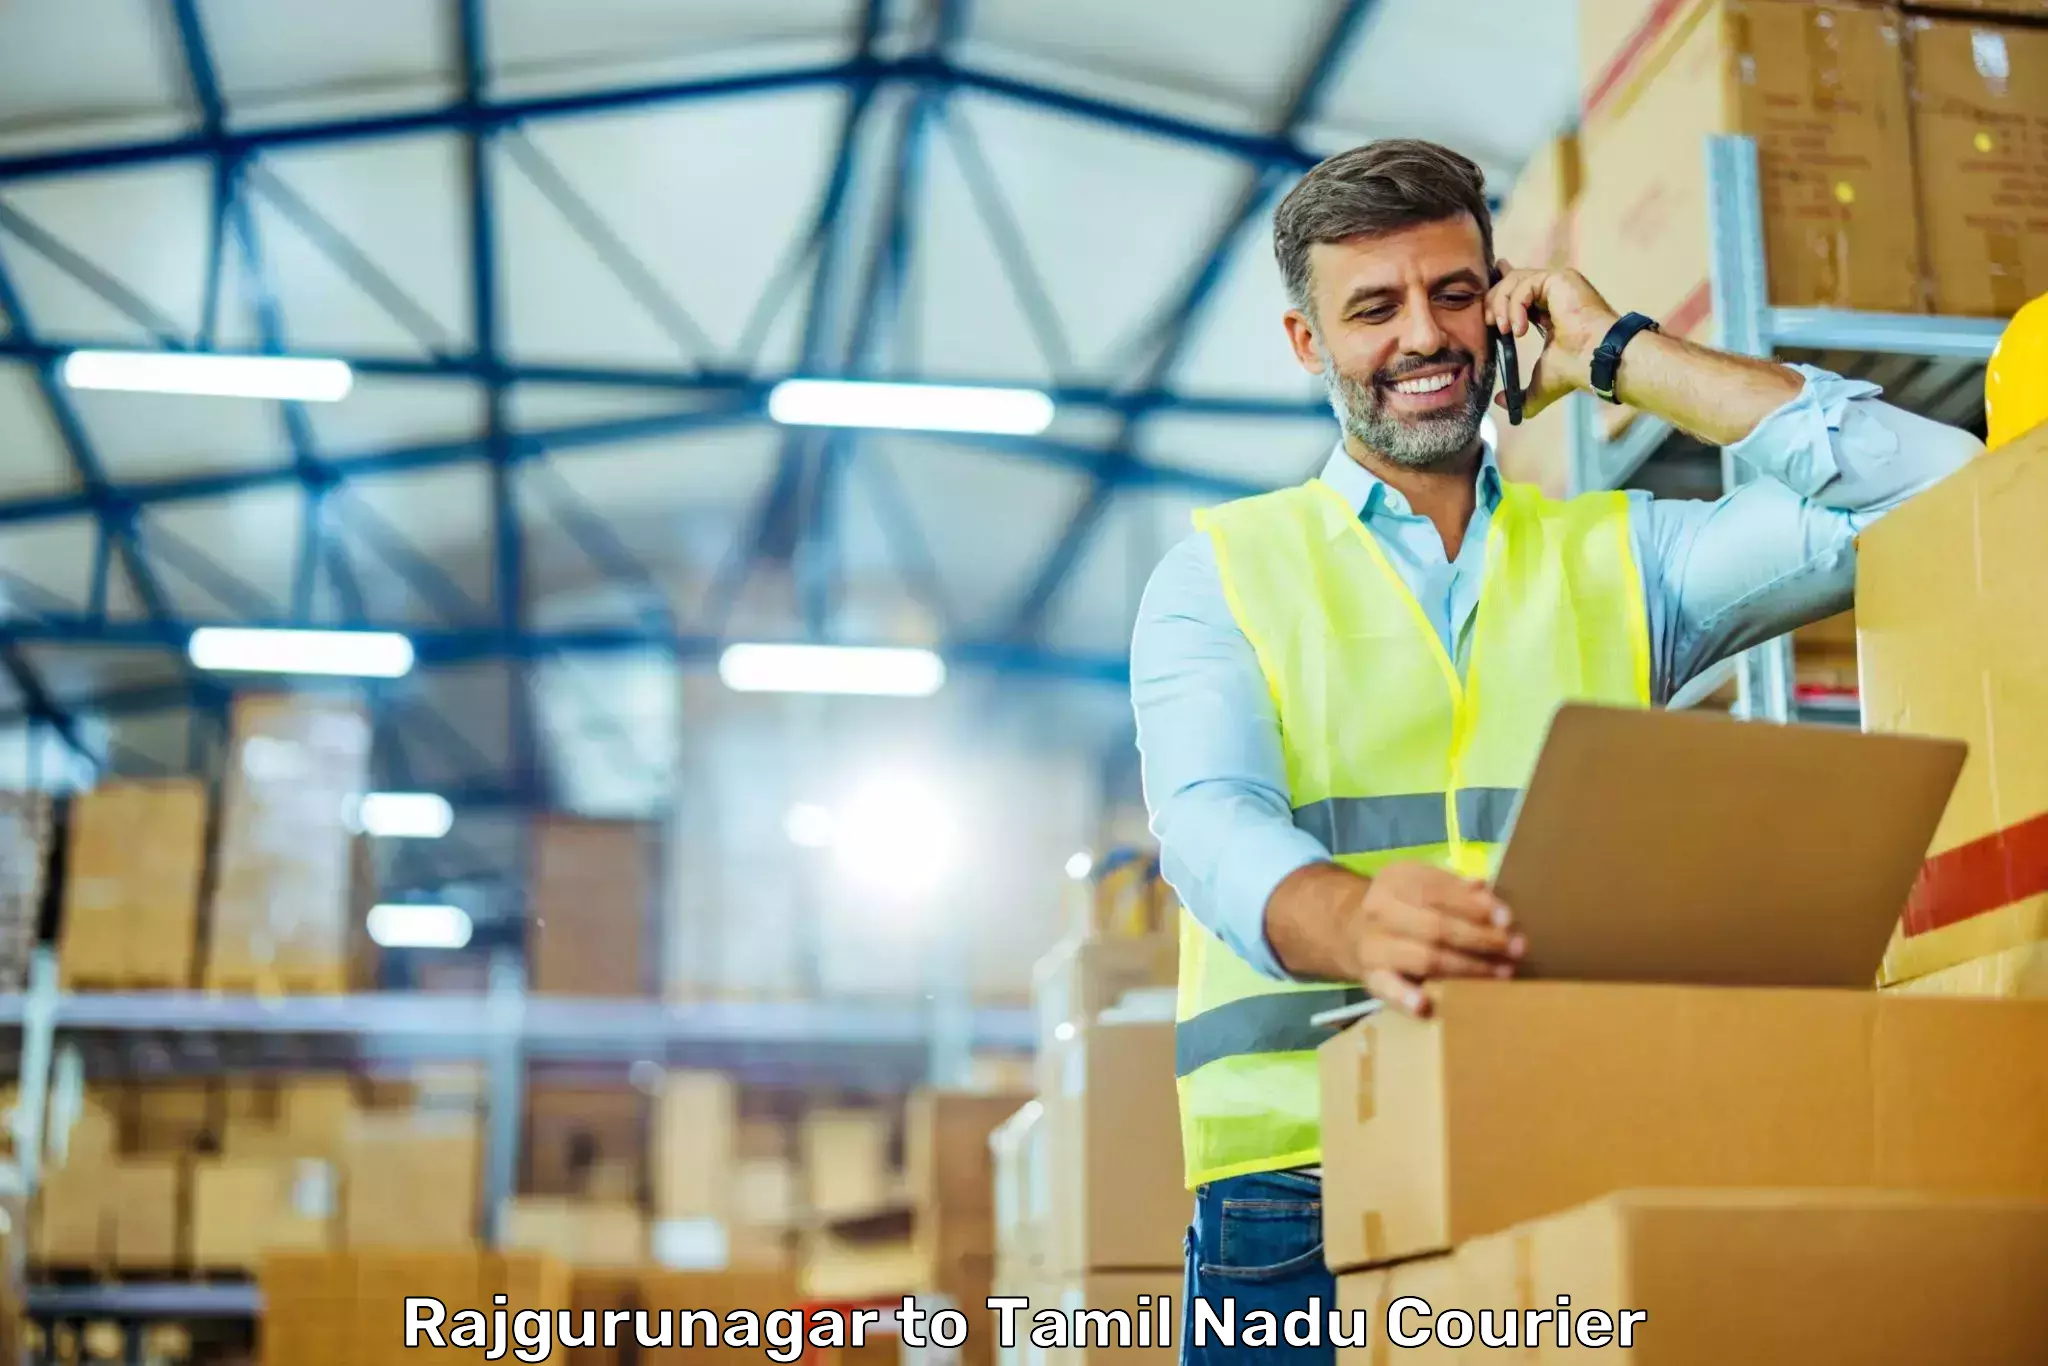 High-speed parcel service Rajgurunagar to Parangimalai